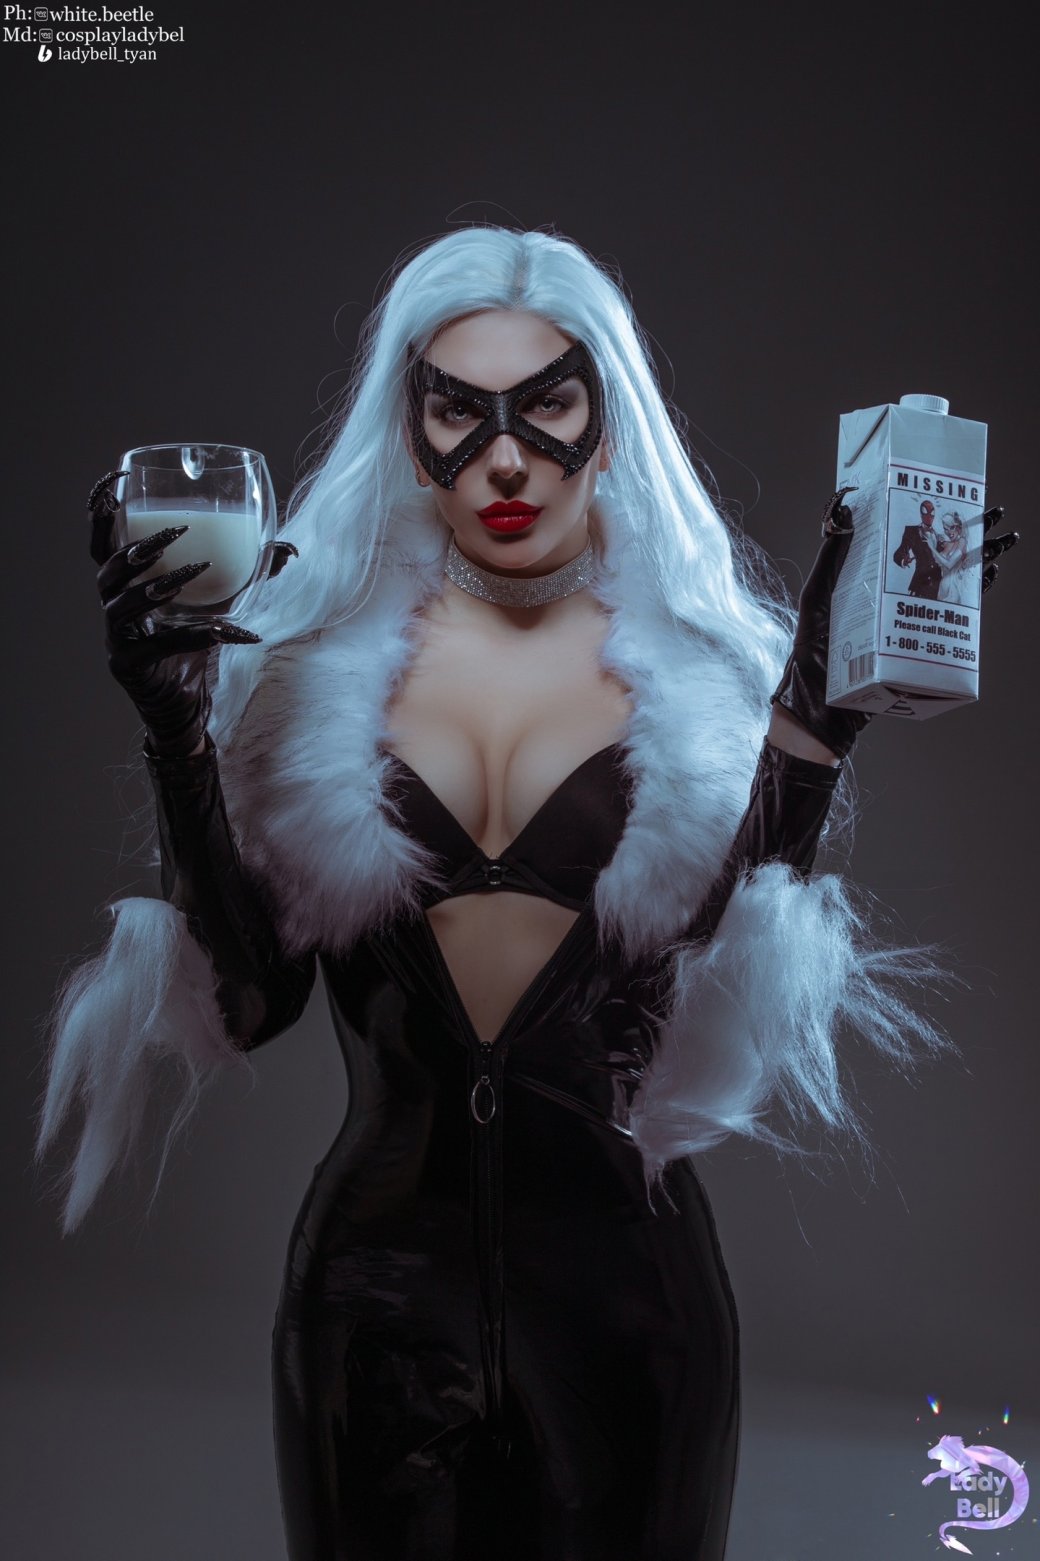 Галерея Модель снялась в откровенном образе Чёрной кошки из комиксов Marvel - 9 фото